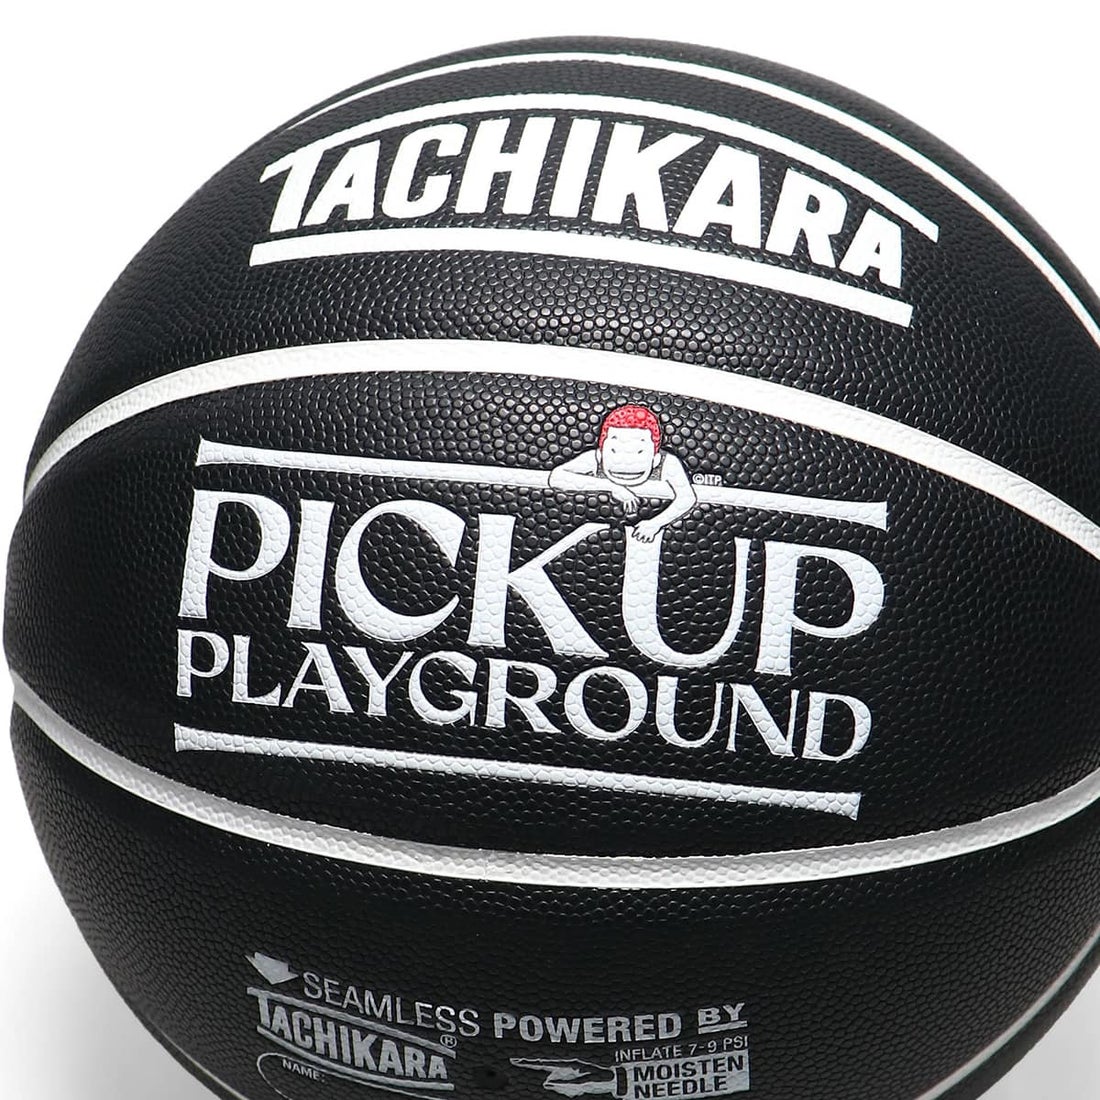 タチカラ TACHIKARA PICK UP PLAYGROUND x TACHIKARA BALL PACK